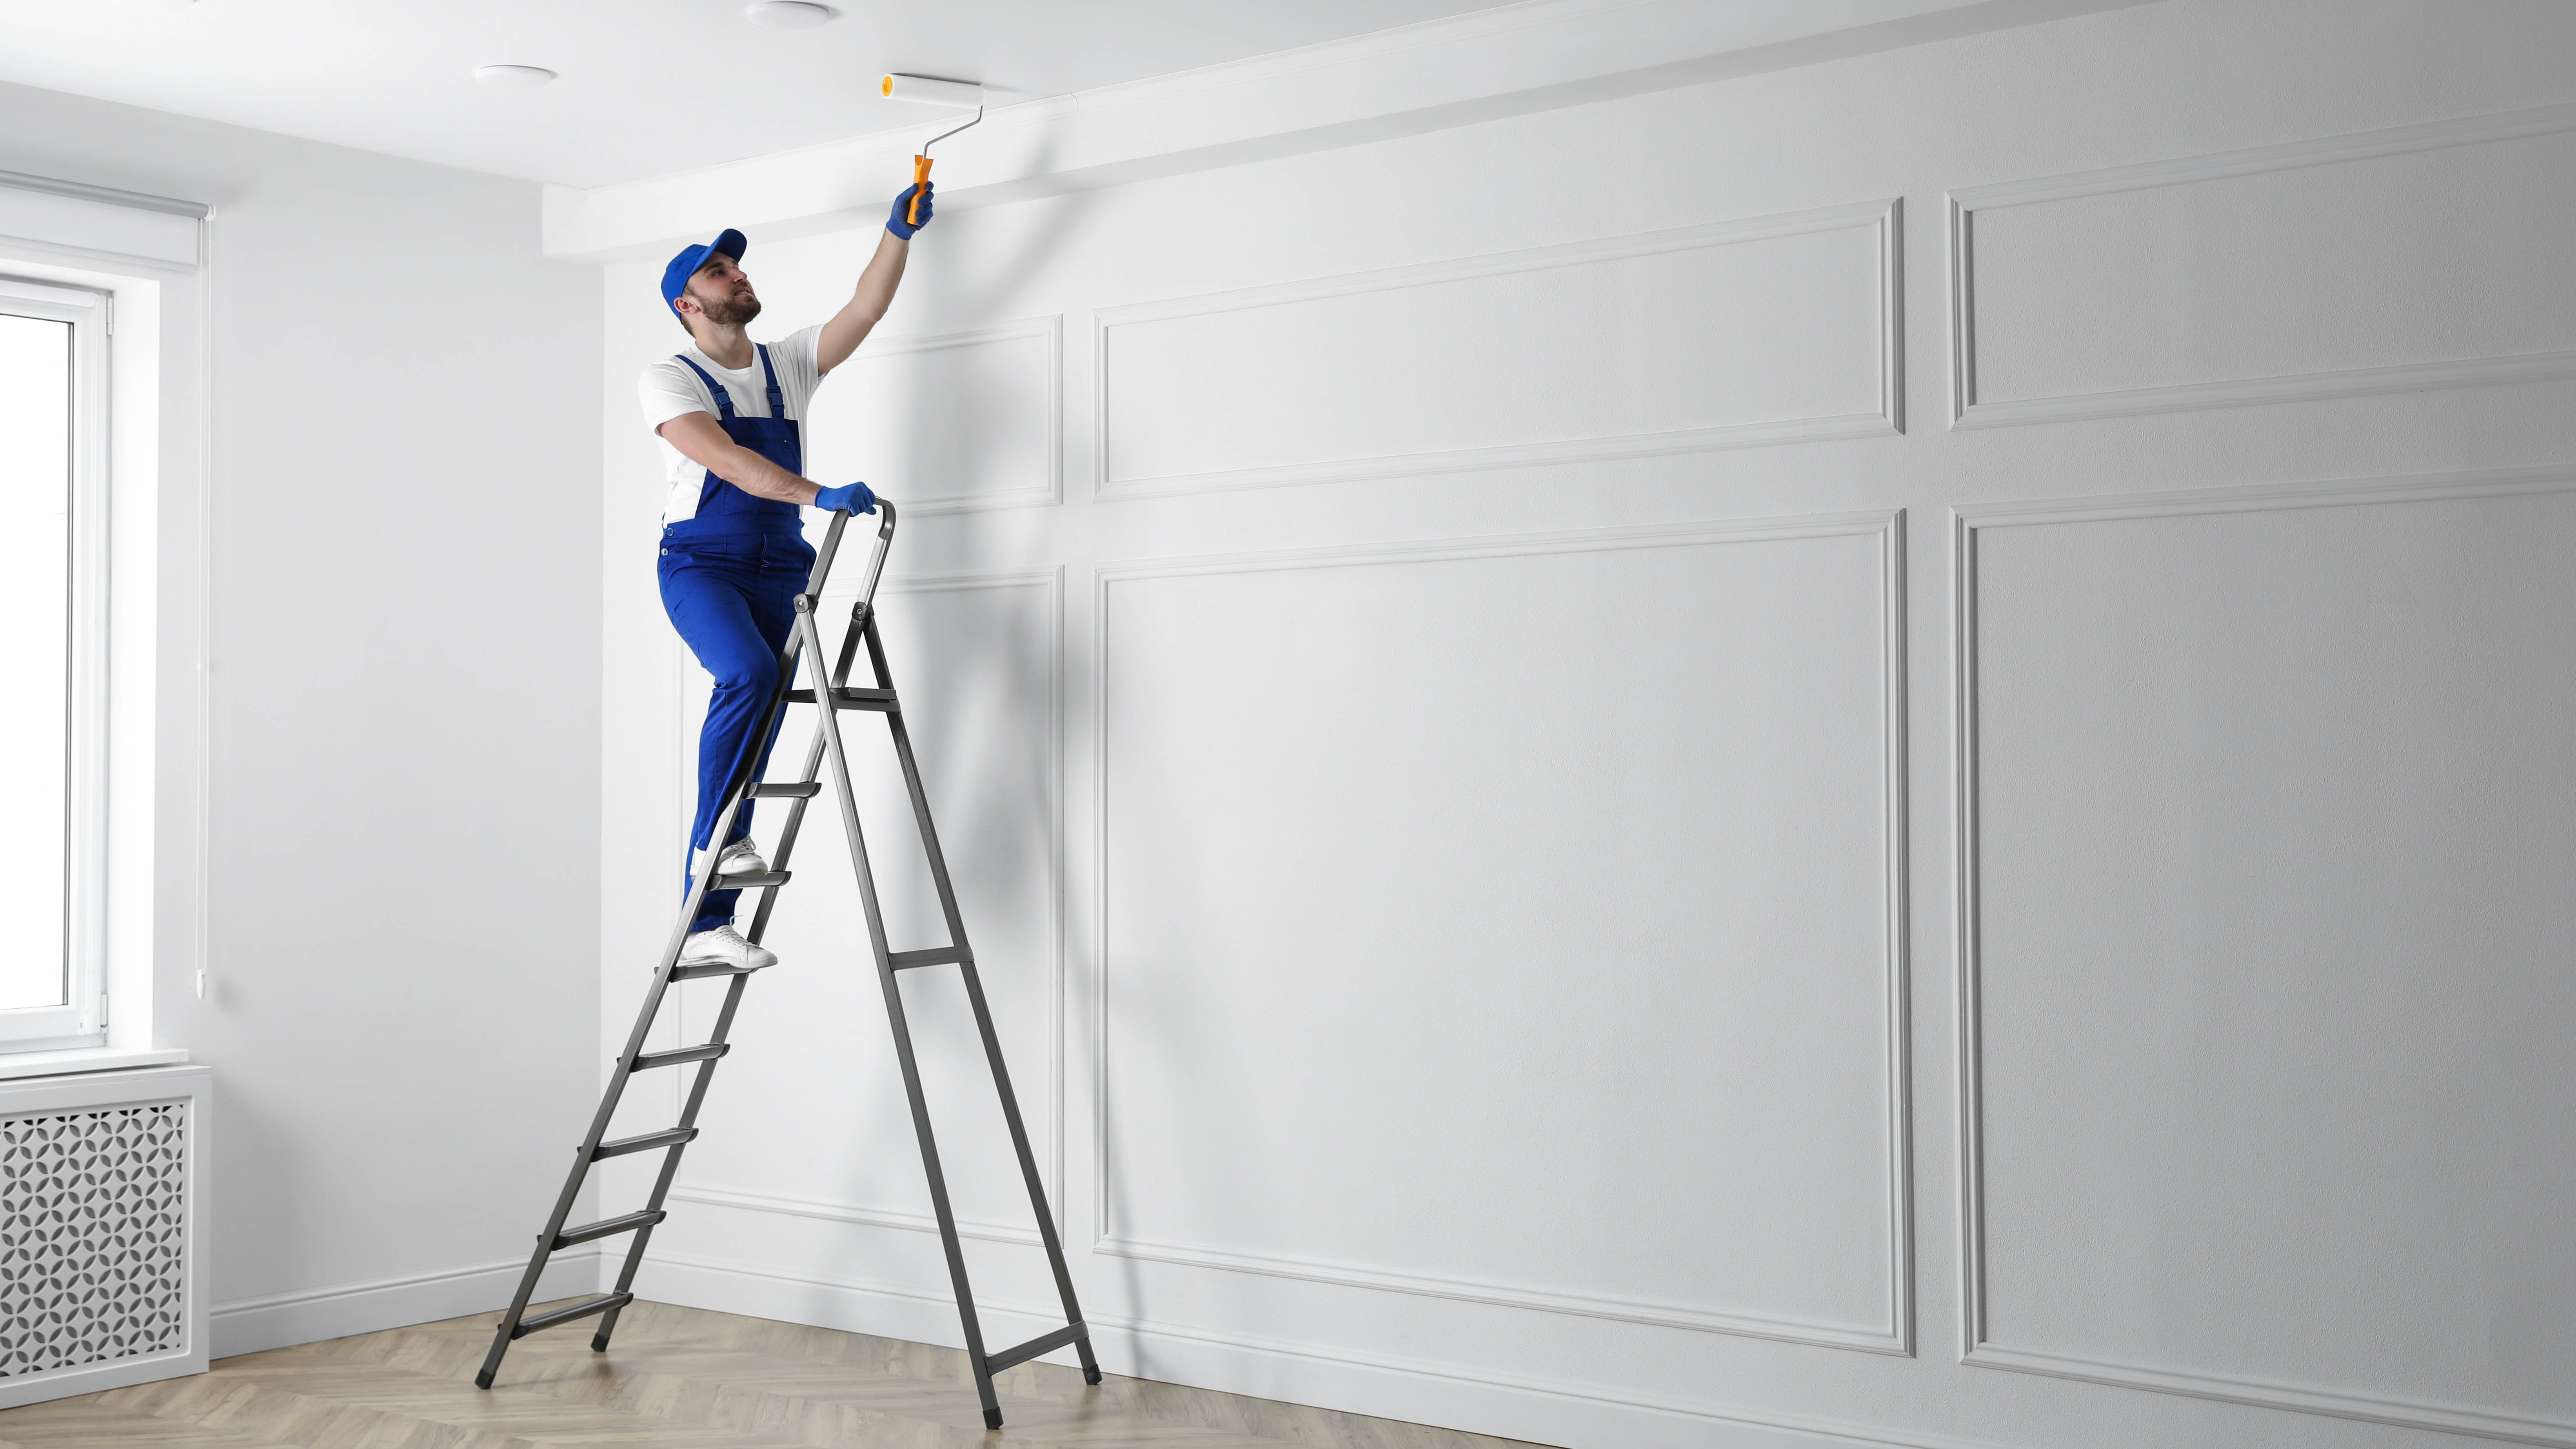 Un homme debout sur une échelle peignant le plafond avec un rouleau